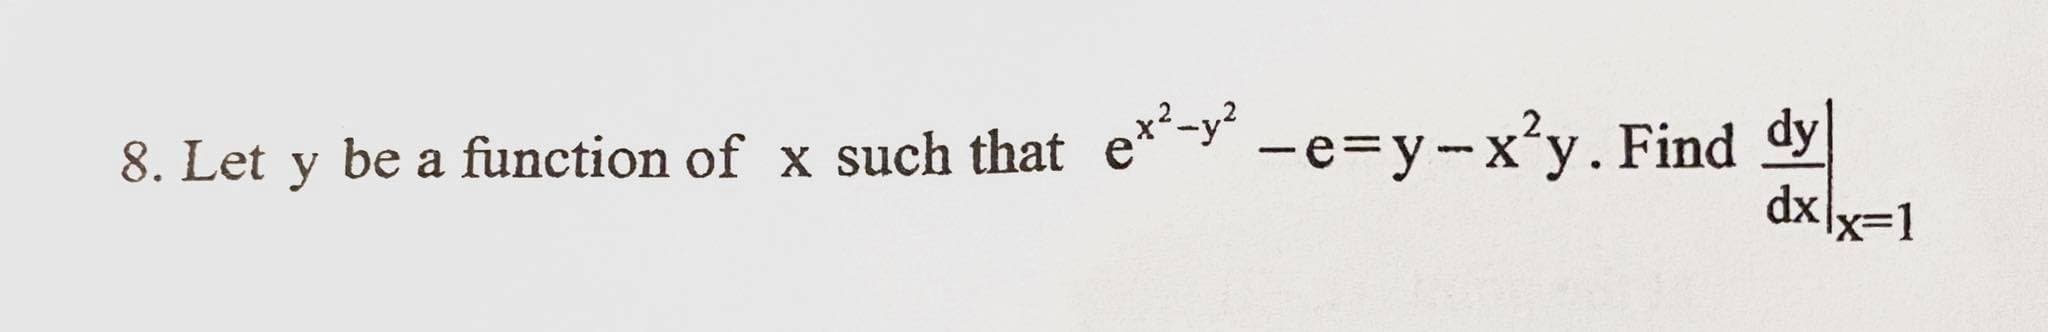 8. Let y -e=y-x²y. Find dy
dxlx=1
be a function of x such that e*-y
